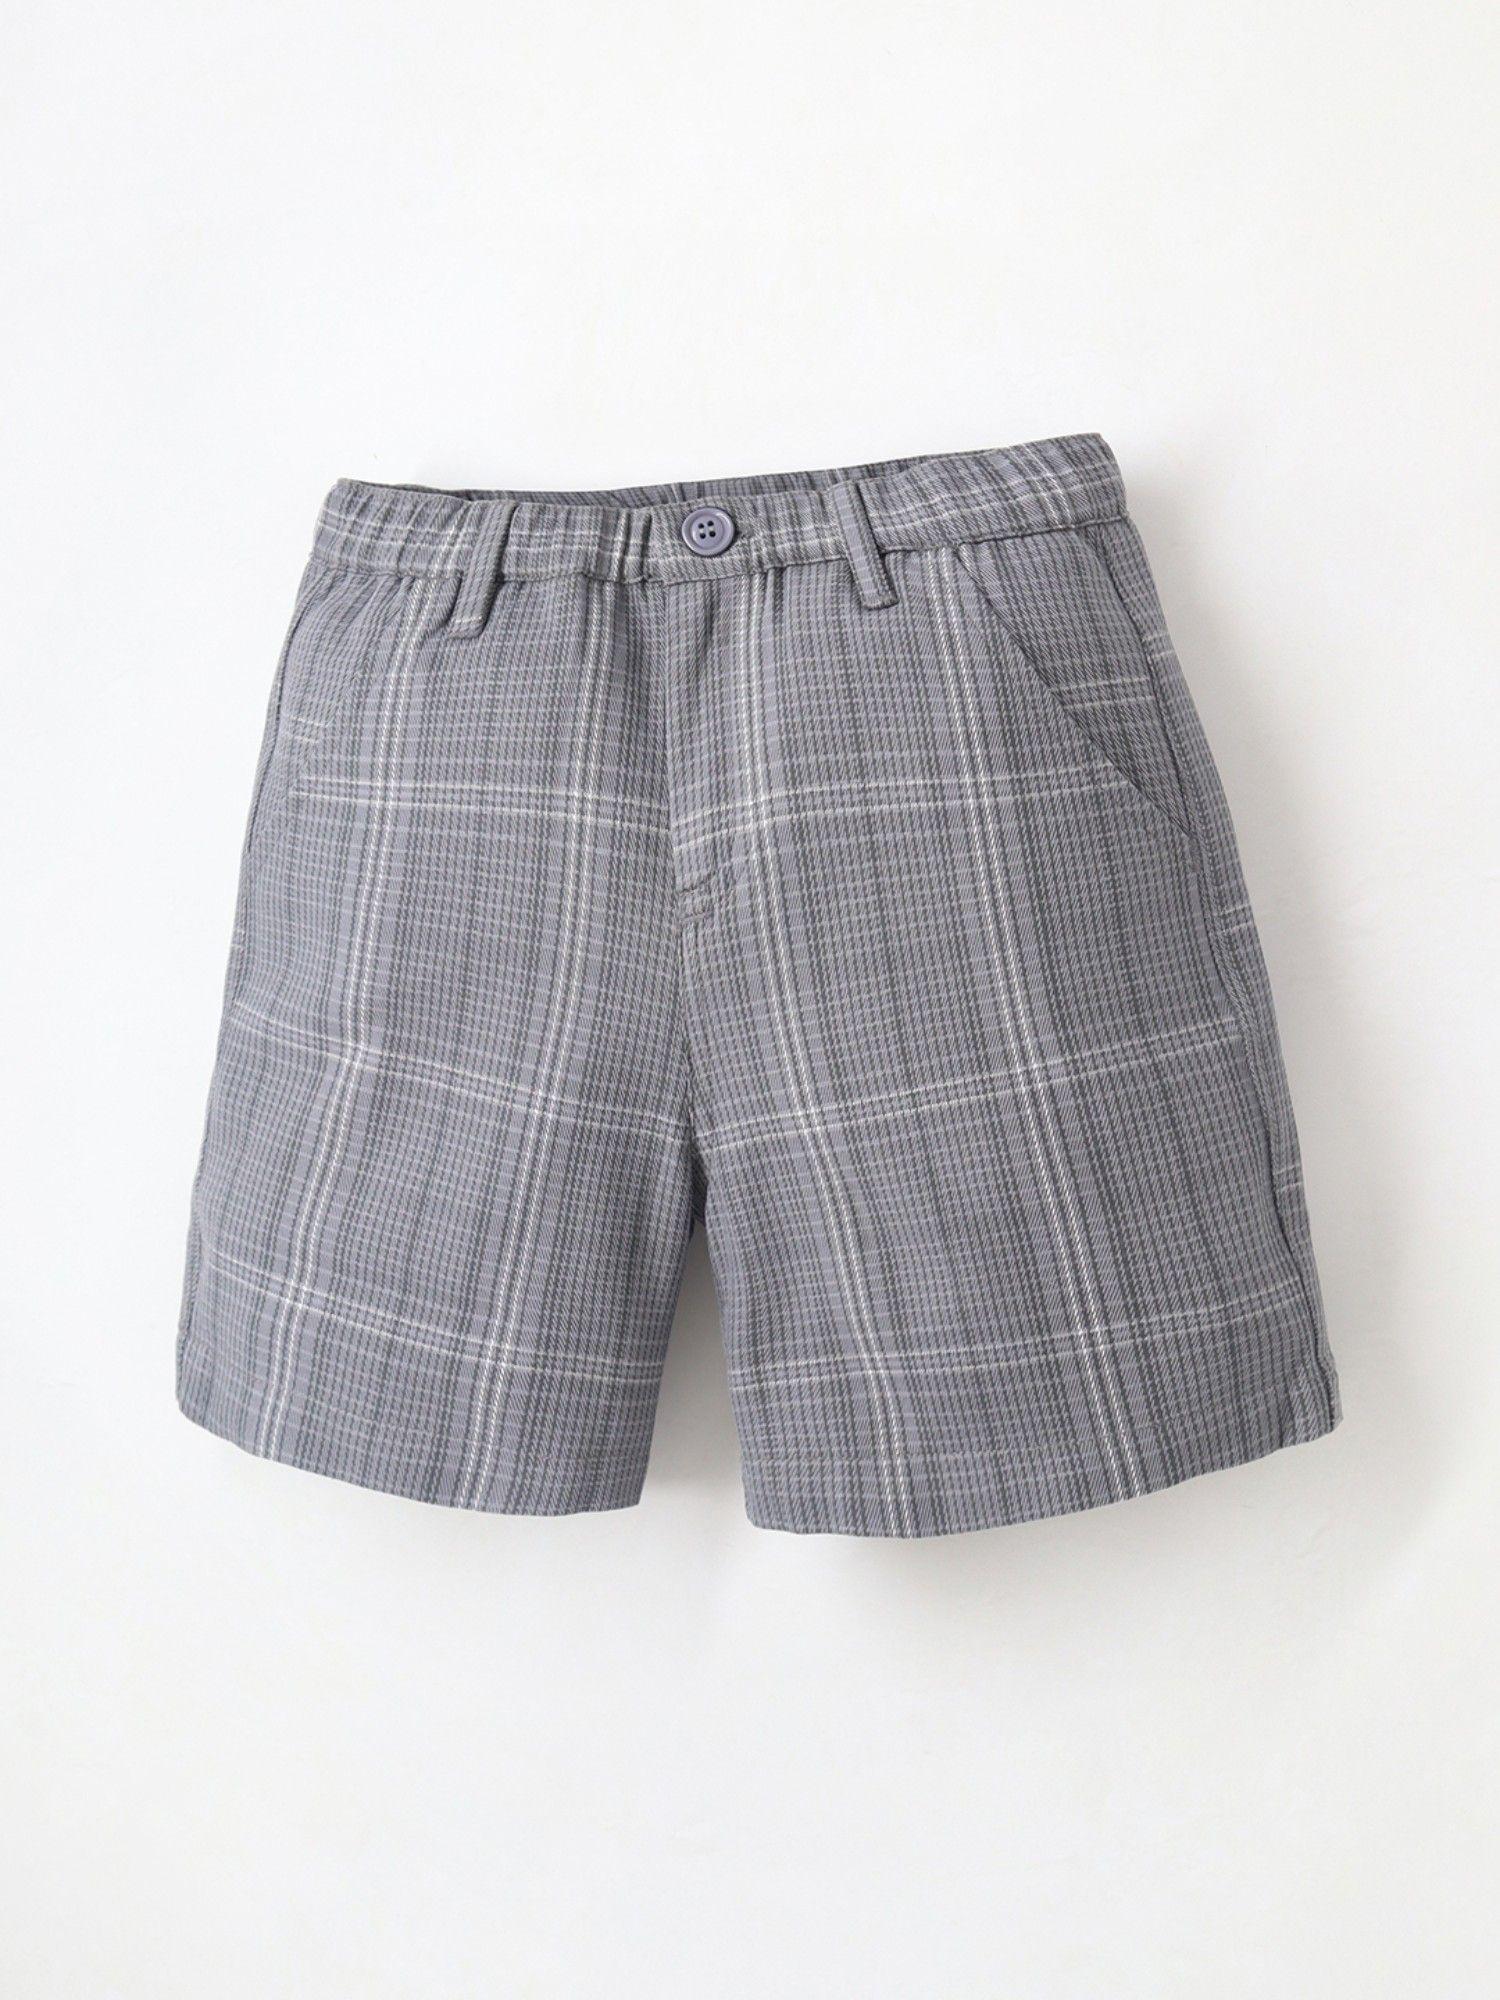 trendy-kids-grey-check-shorts